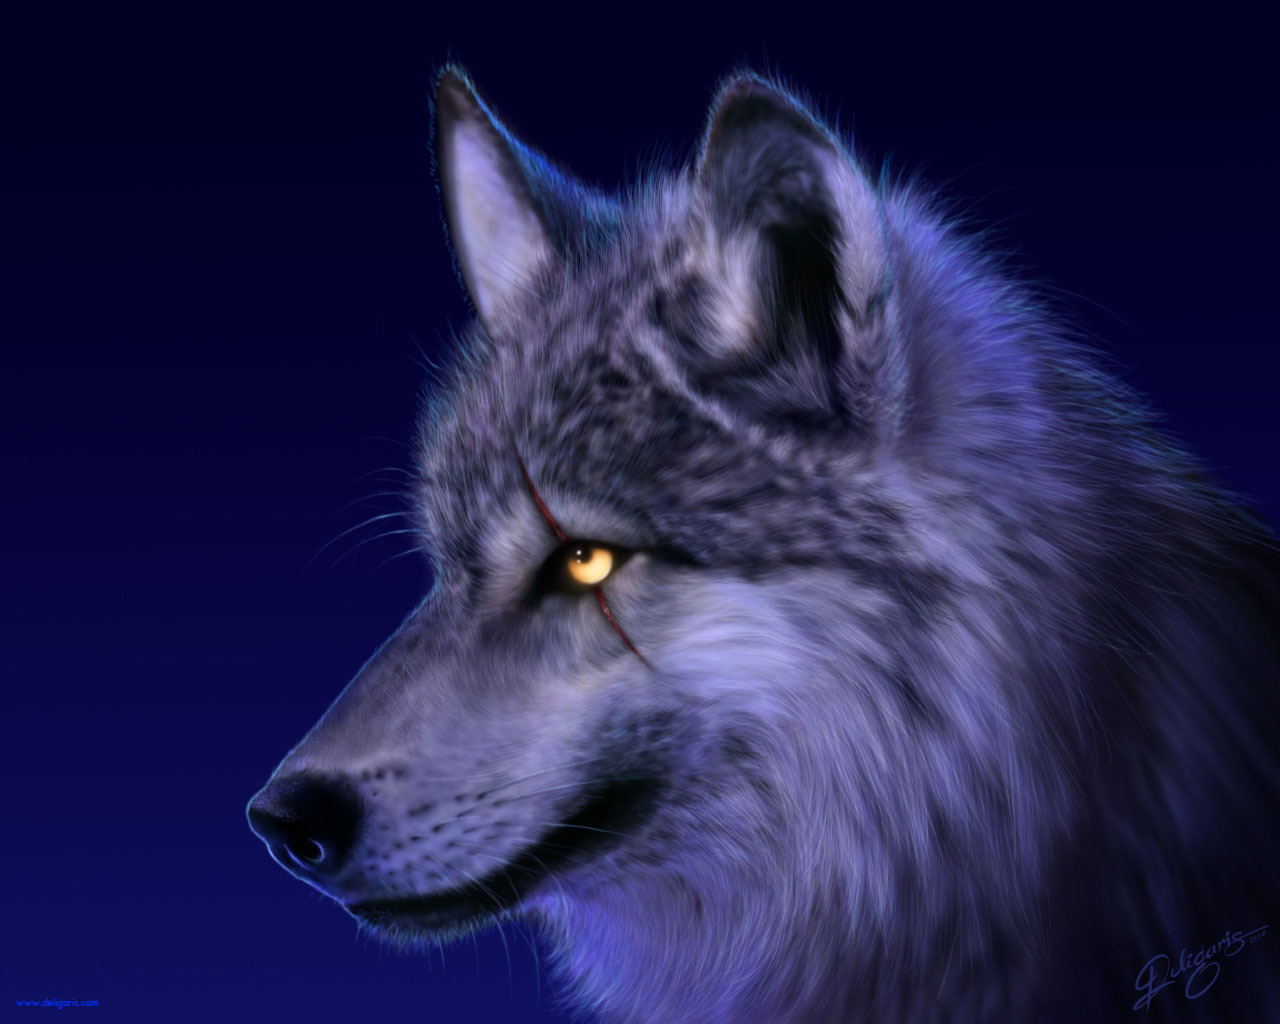 wolfs, animals, blue